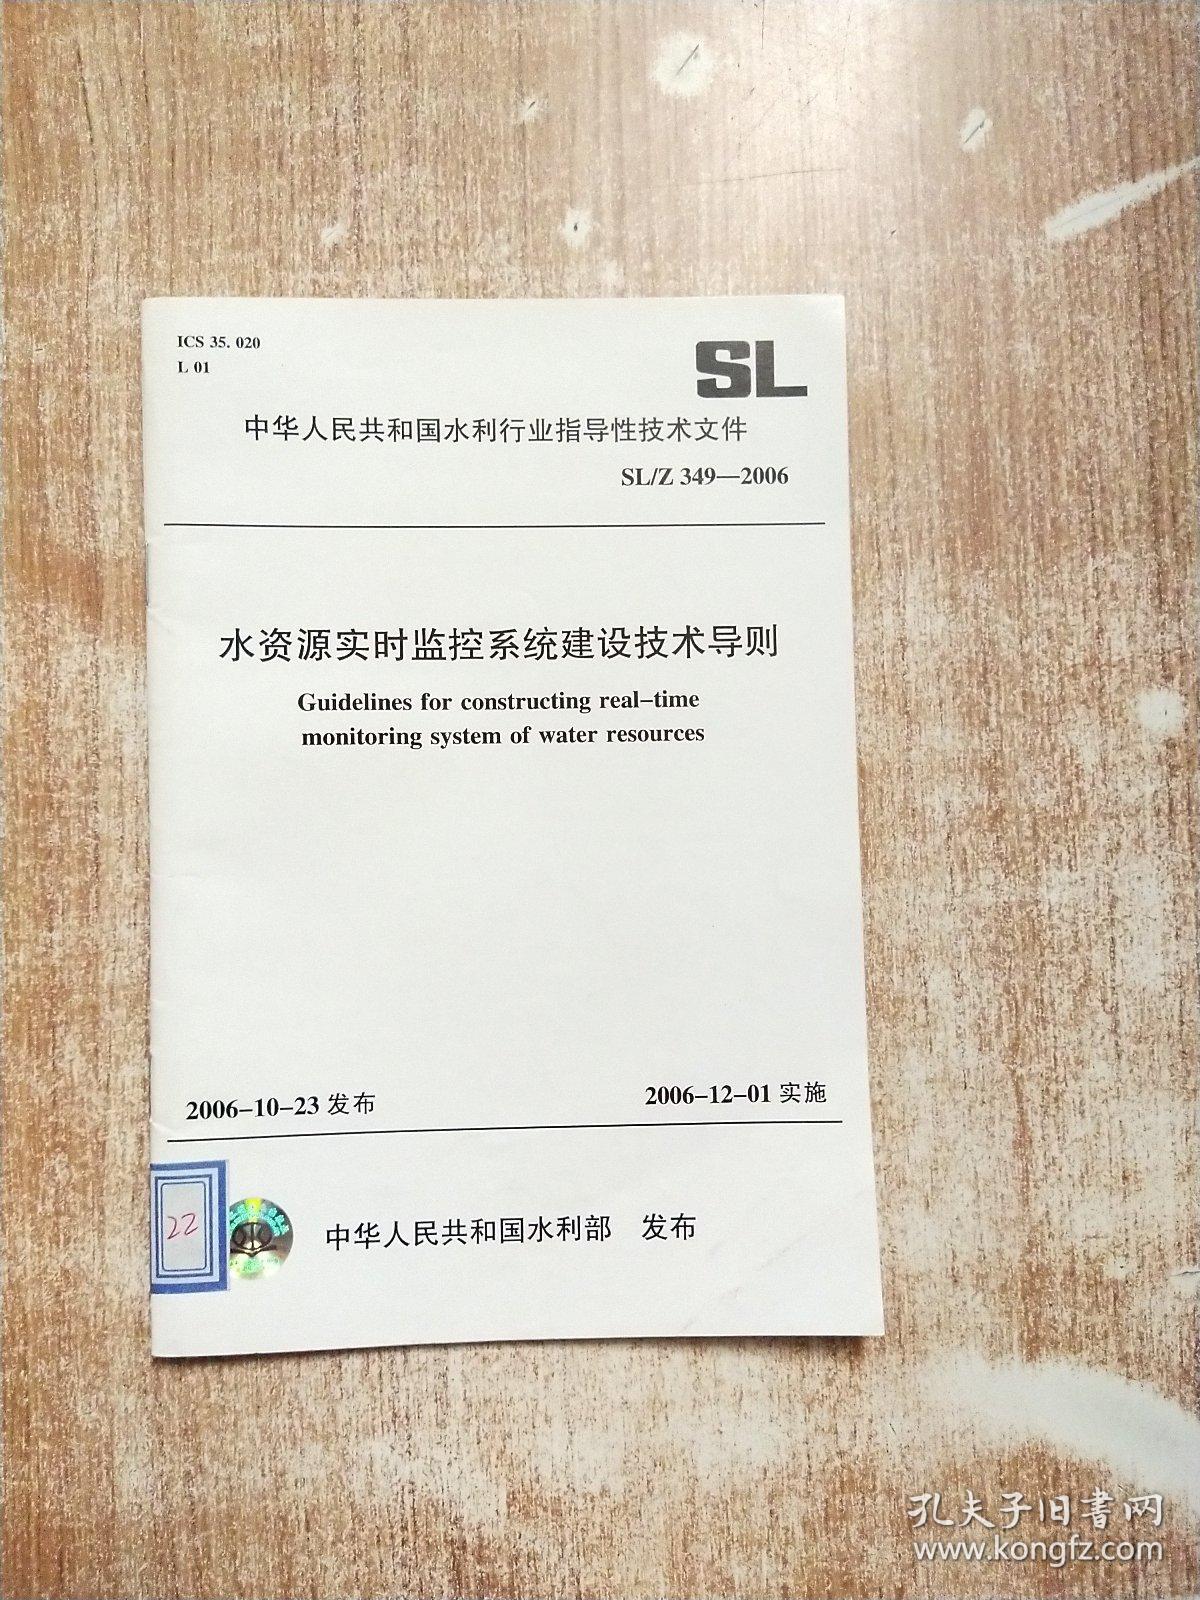 中华人民共和国水利行业标准：水资源实时监控系统建设技术导则